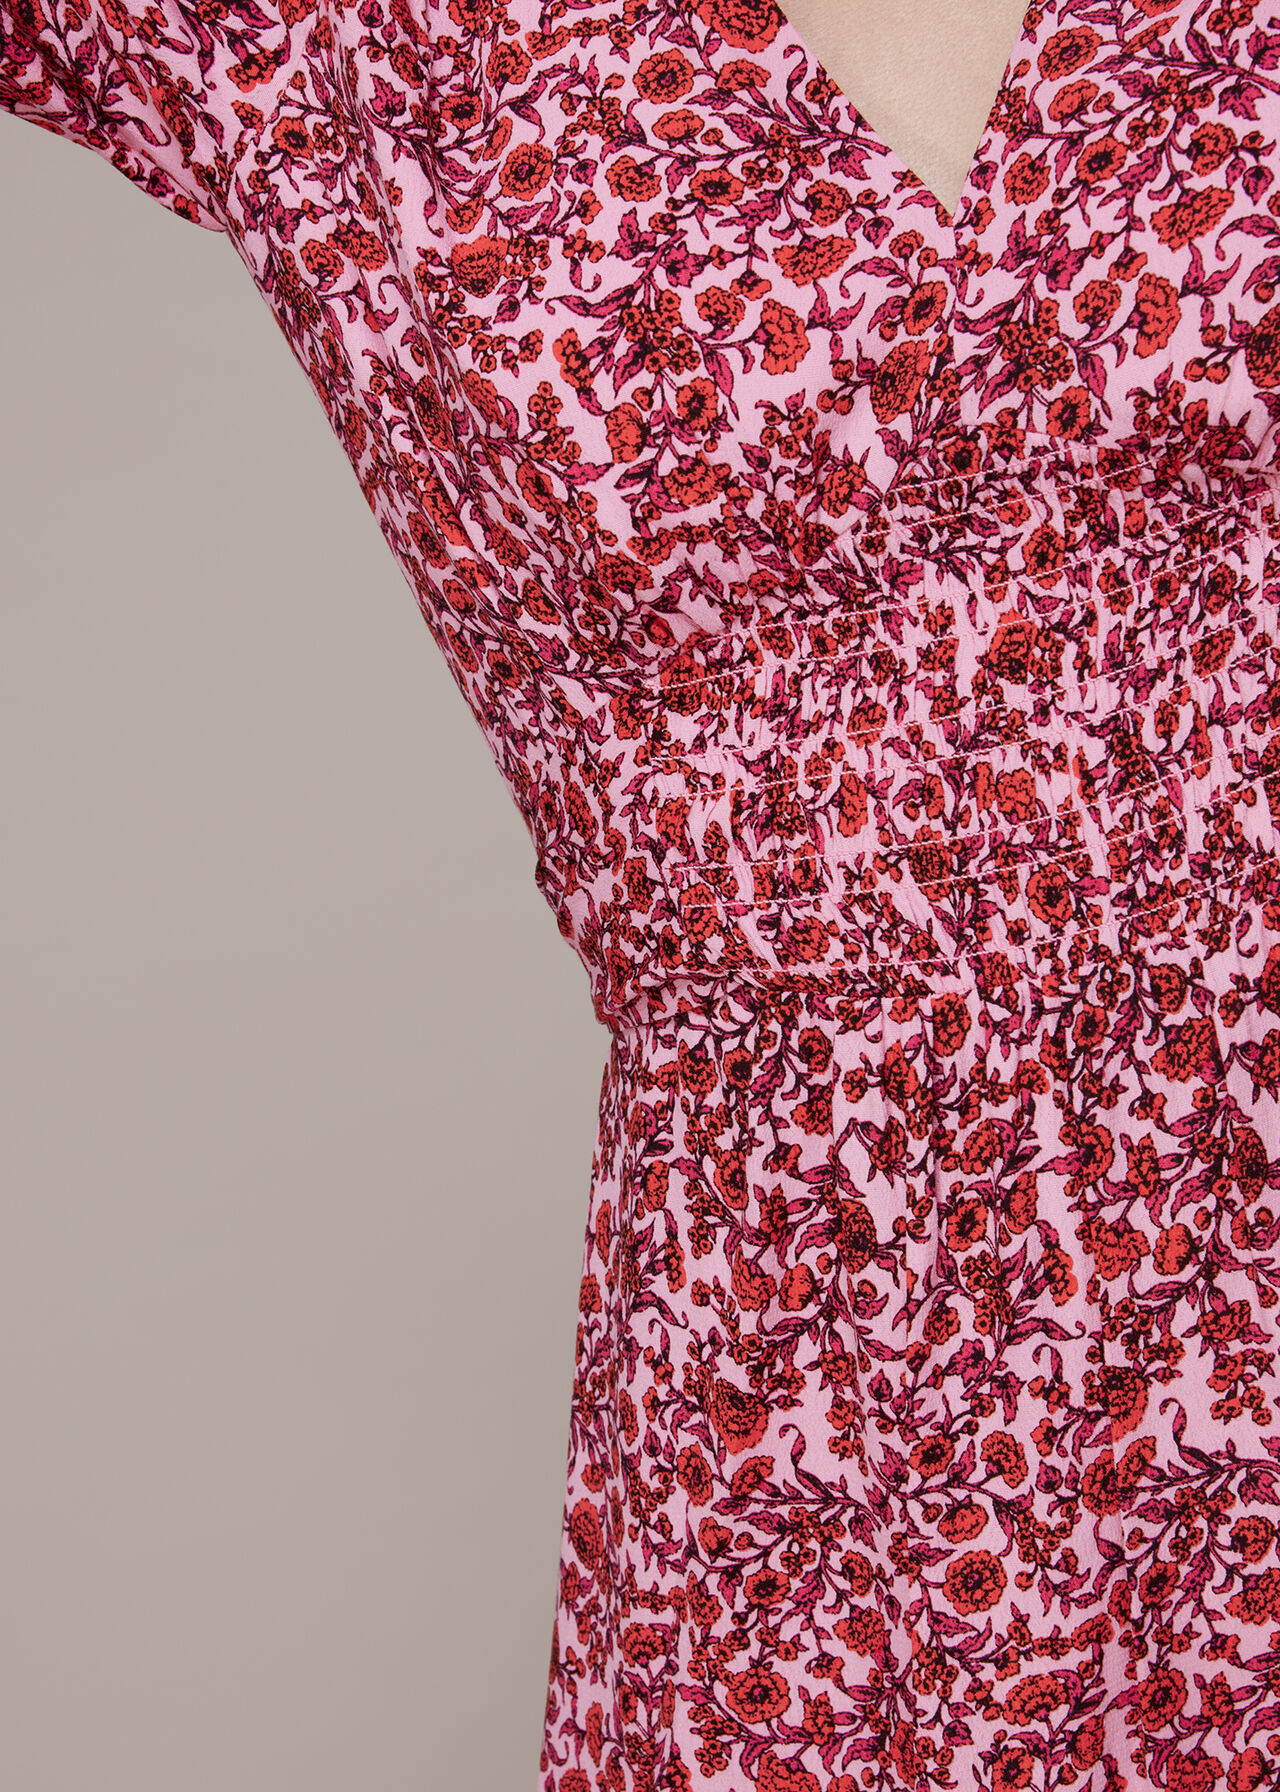 Heath Floral Print Midi Dress